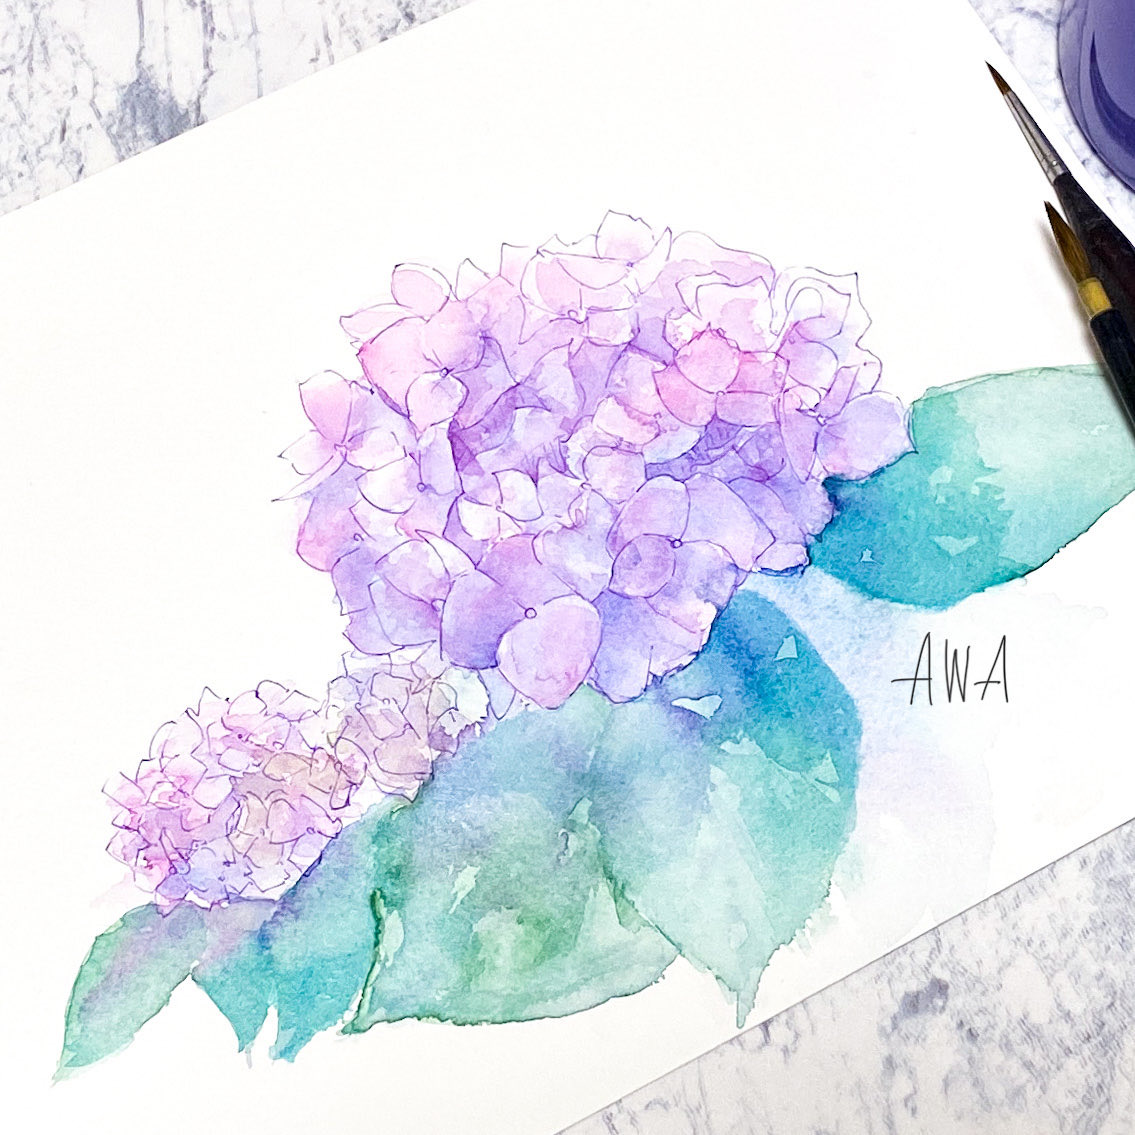 「#とびきりの紫を魅せて下さい透明水彩で描いた紫陽花 」|Awa＊ふわもこ堂の水彩屋さんのイラスト